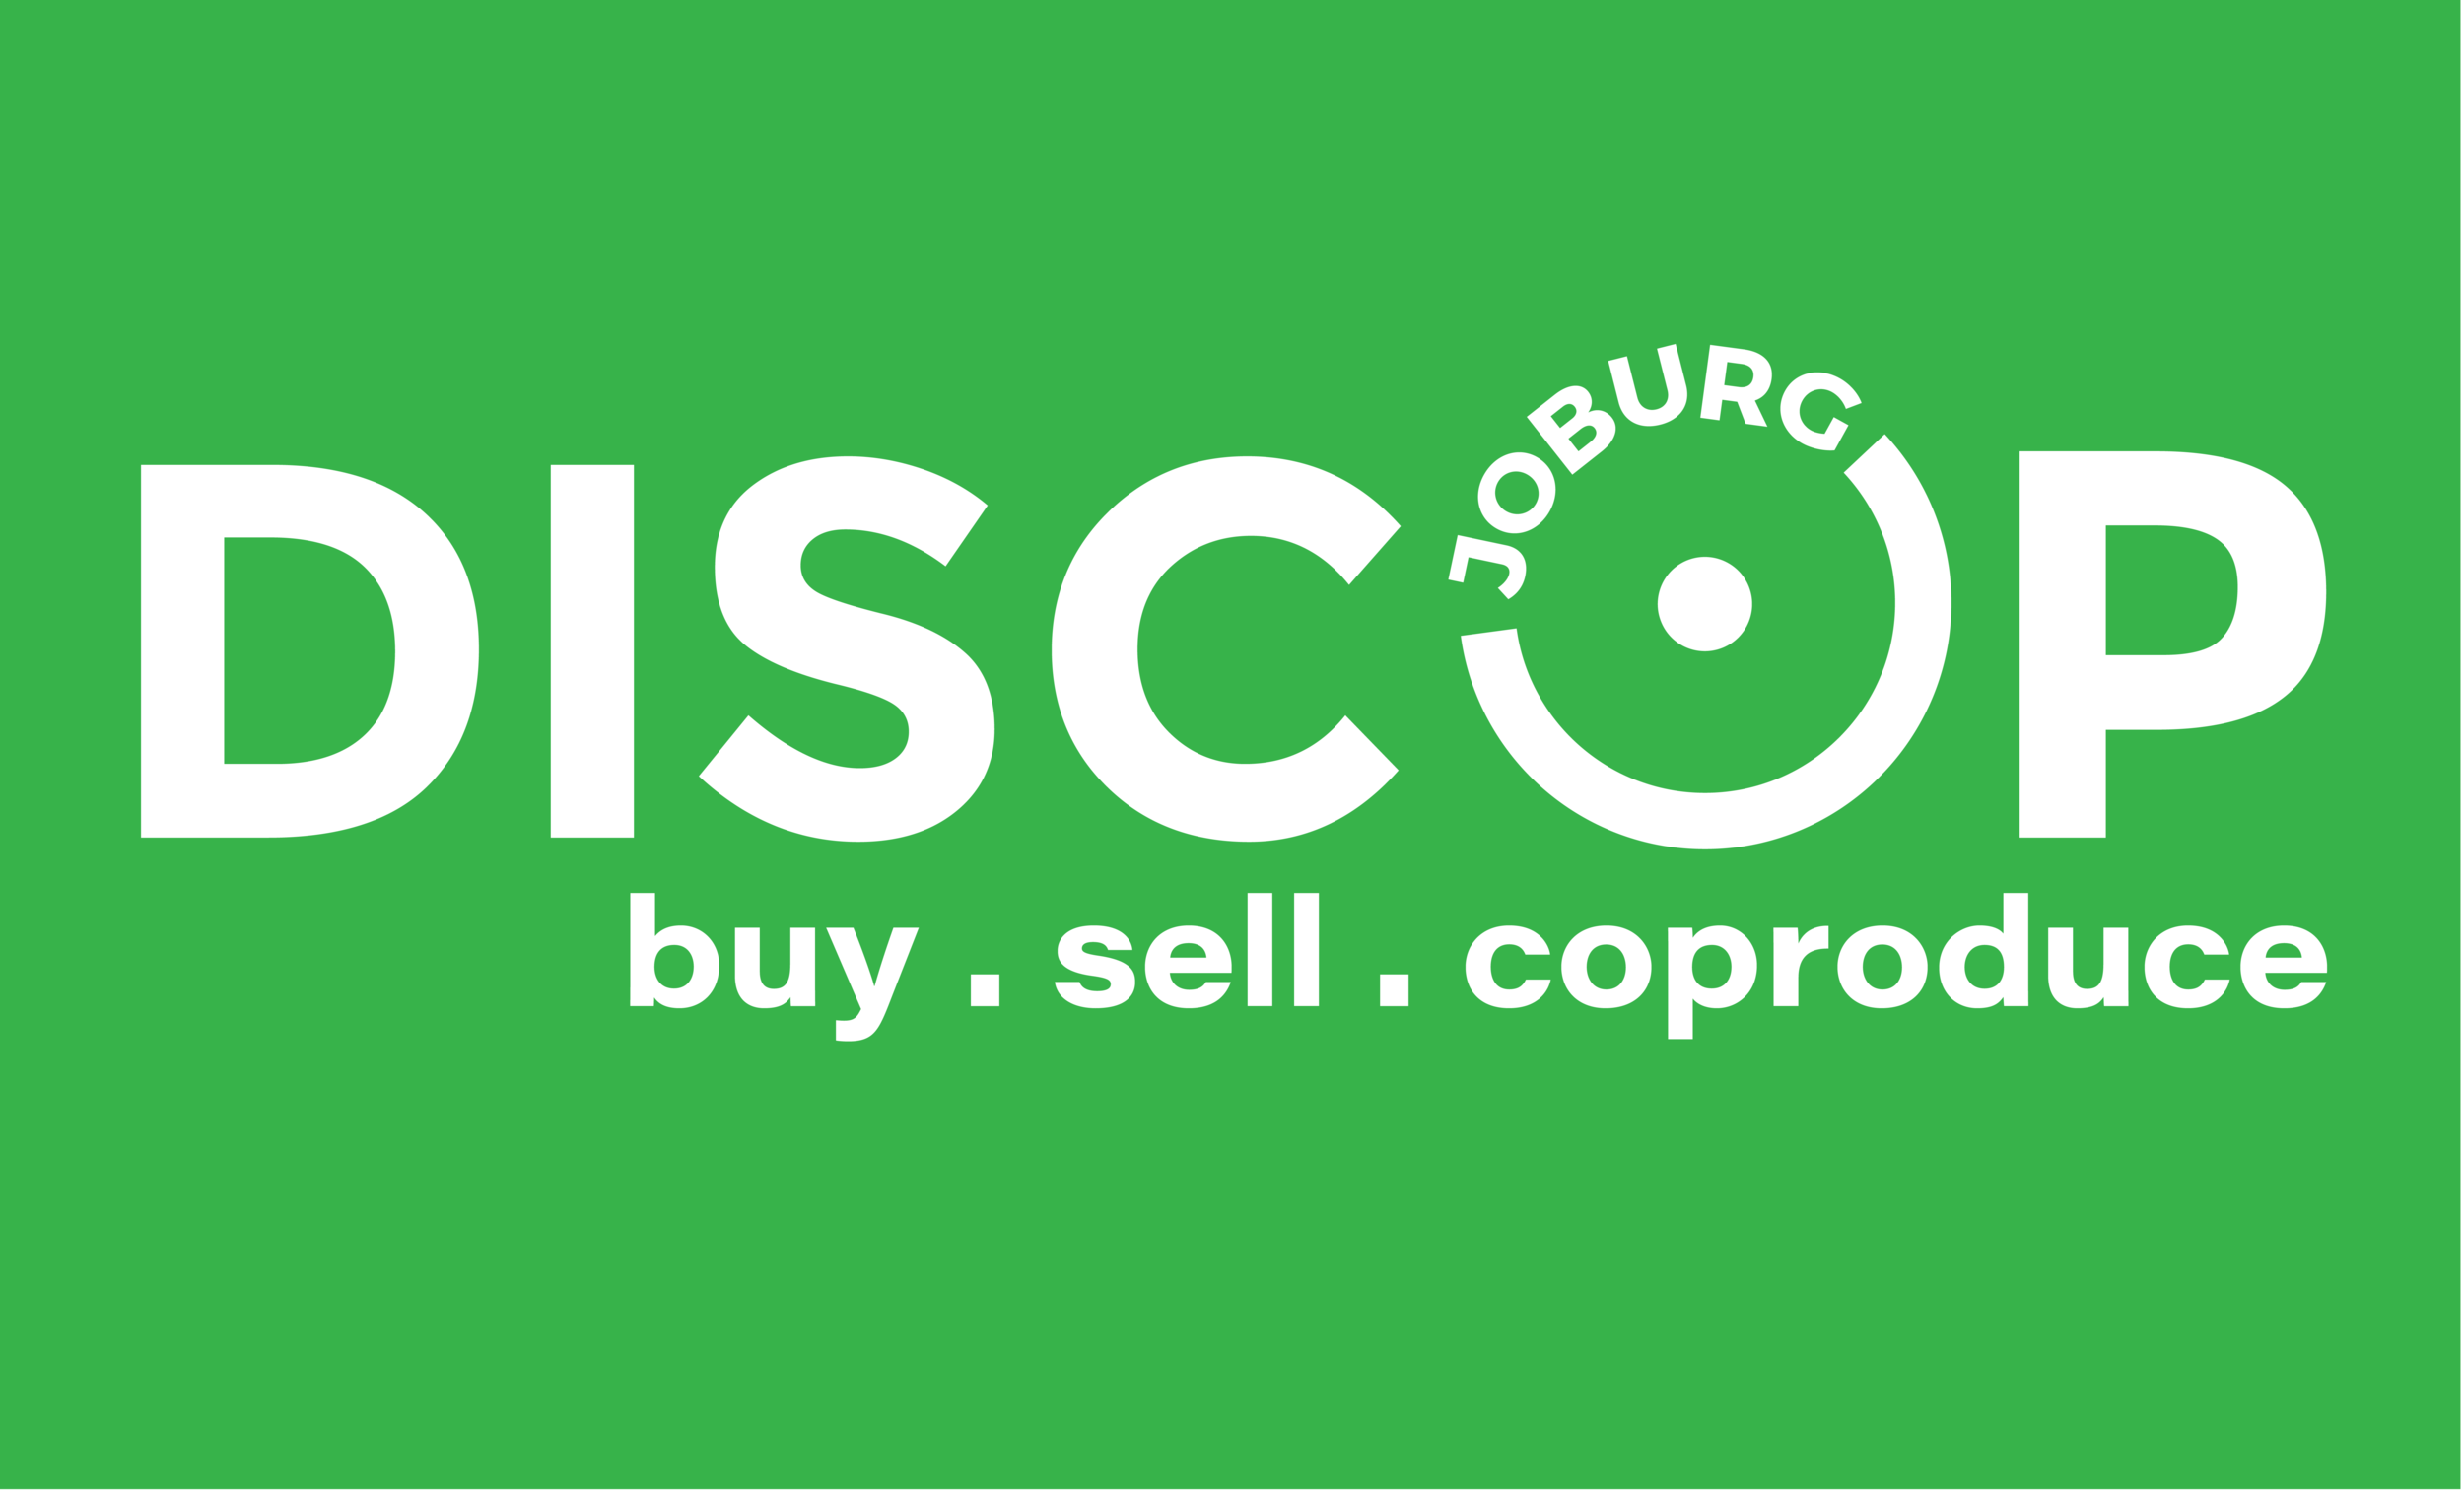 disopc+joburg_buySellCoproduc2-01